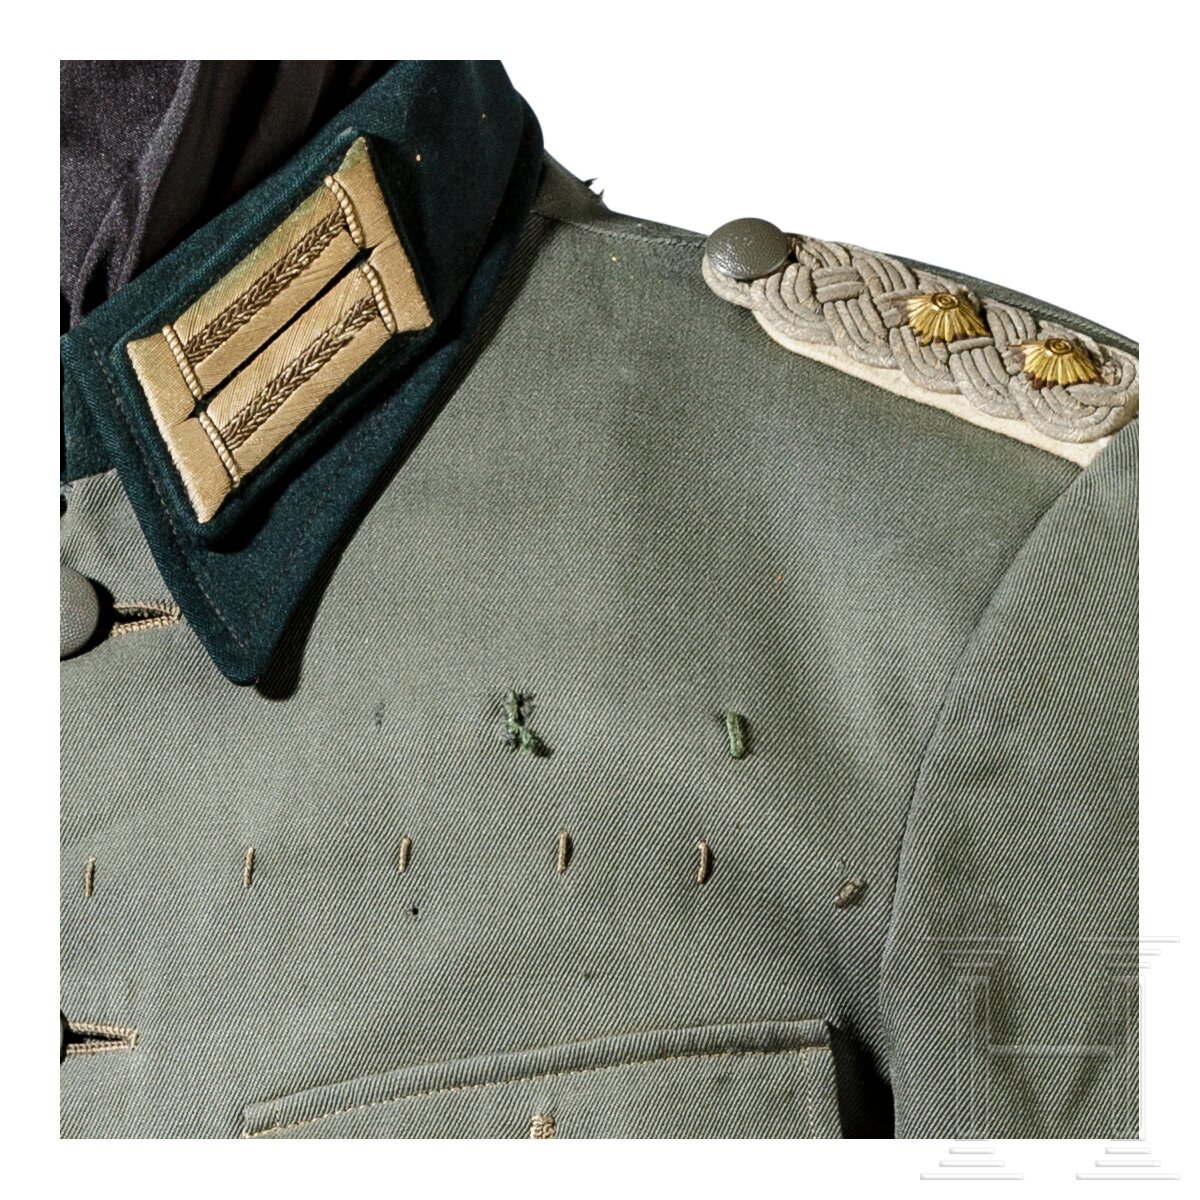 Oberst Hans Ritter und Edler von Rauscher (1889 - 1957) - Uniformrock 1937 mit Freikorps Epp-Abzeich - Image 7 of 7